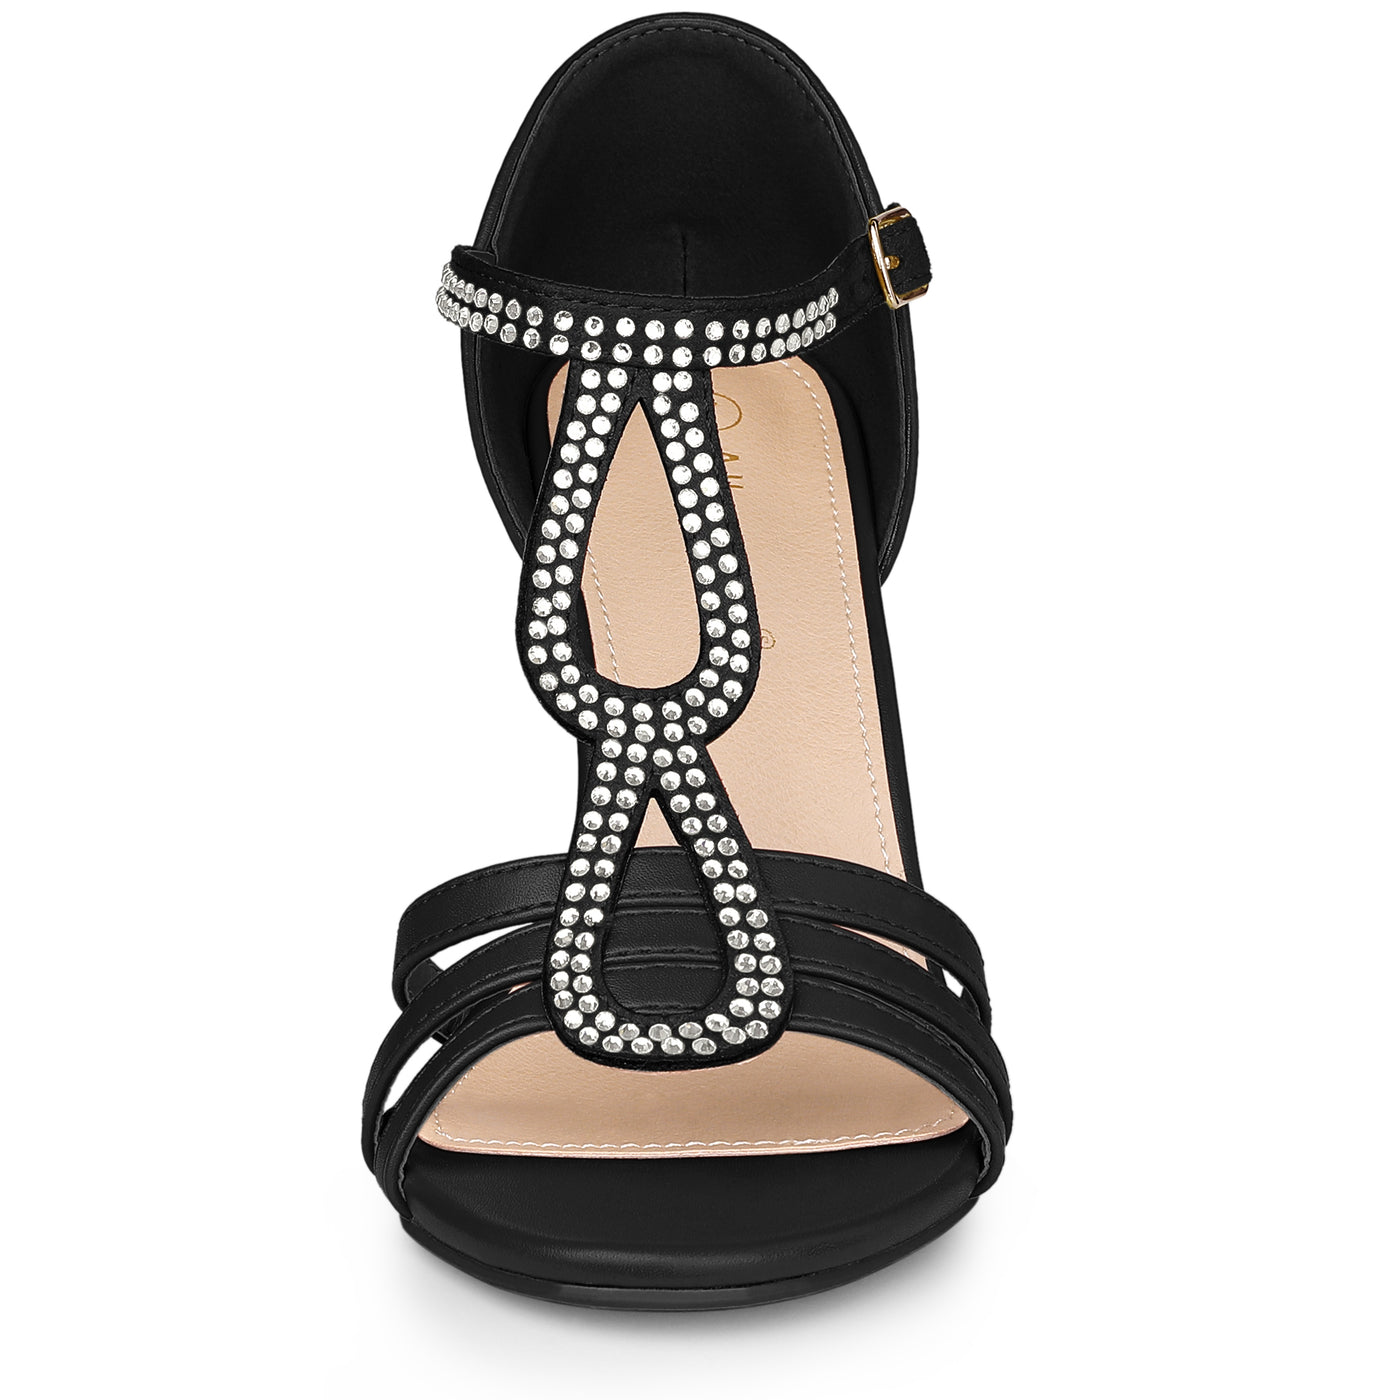 Allegra K Women's Rhinestone Ankle Strap Open Toe Stiletto Heels Sandals